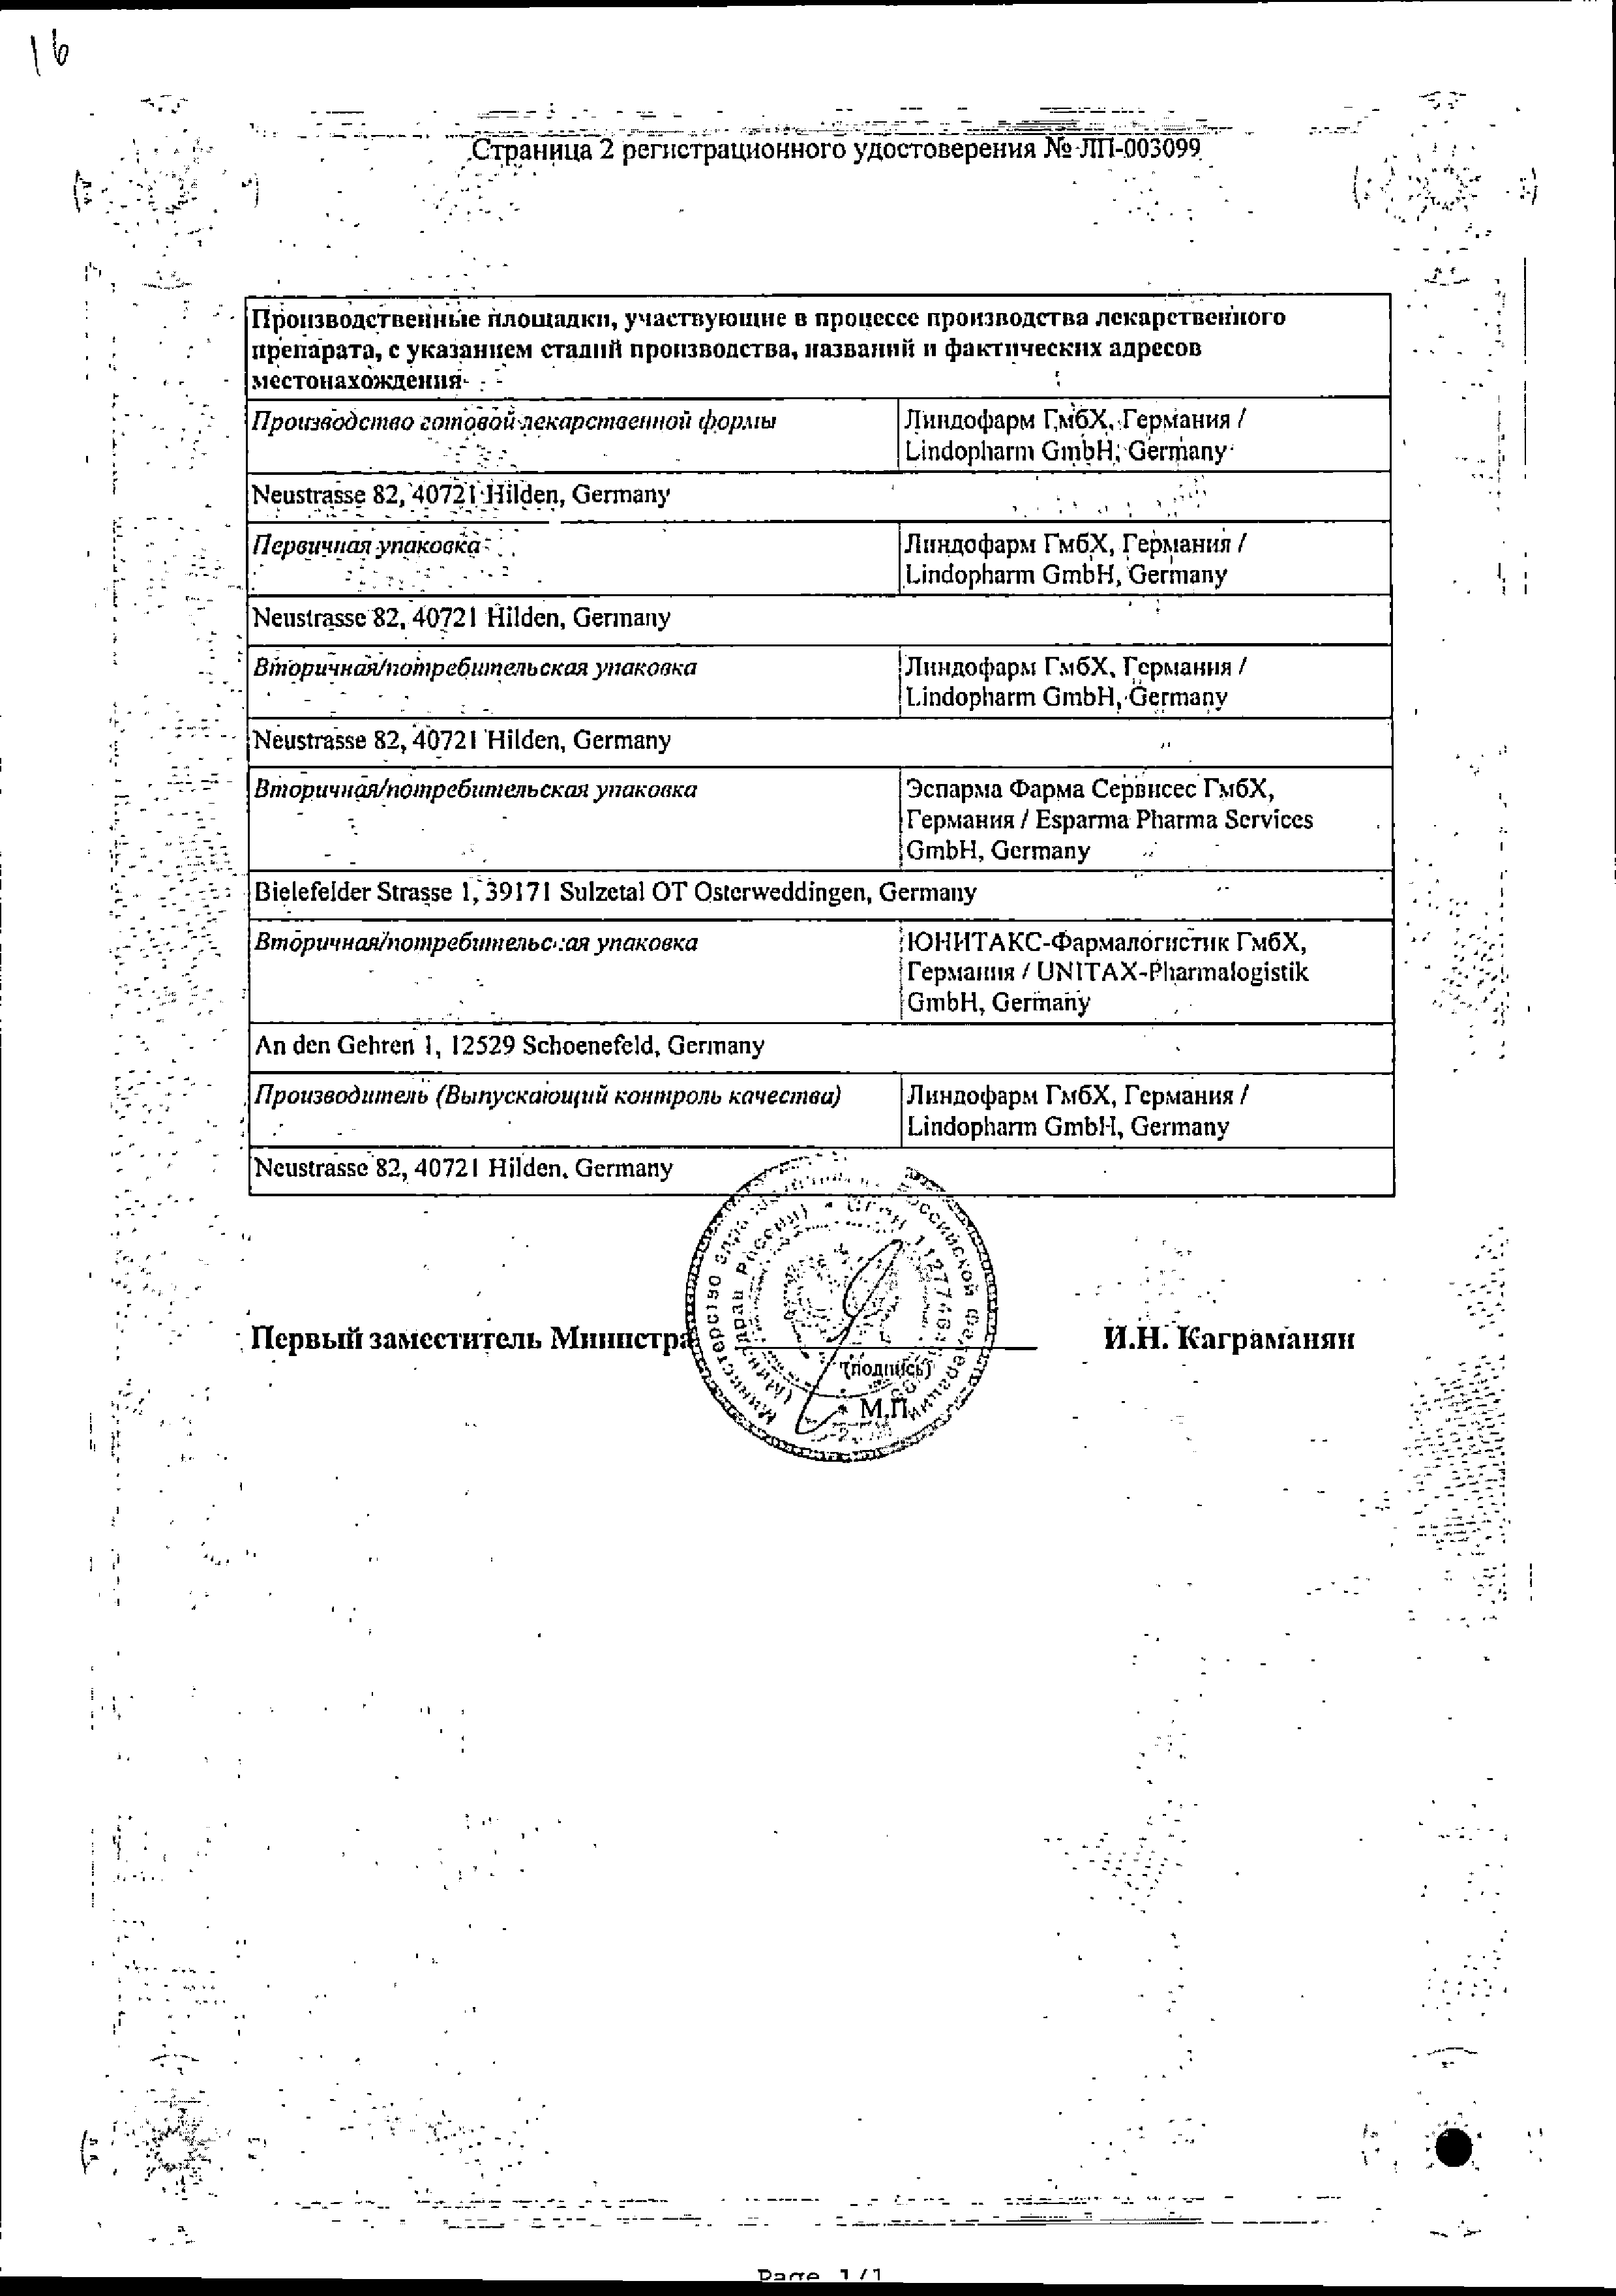 Фосфомицин Эспарма сертификат